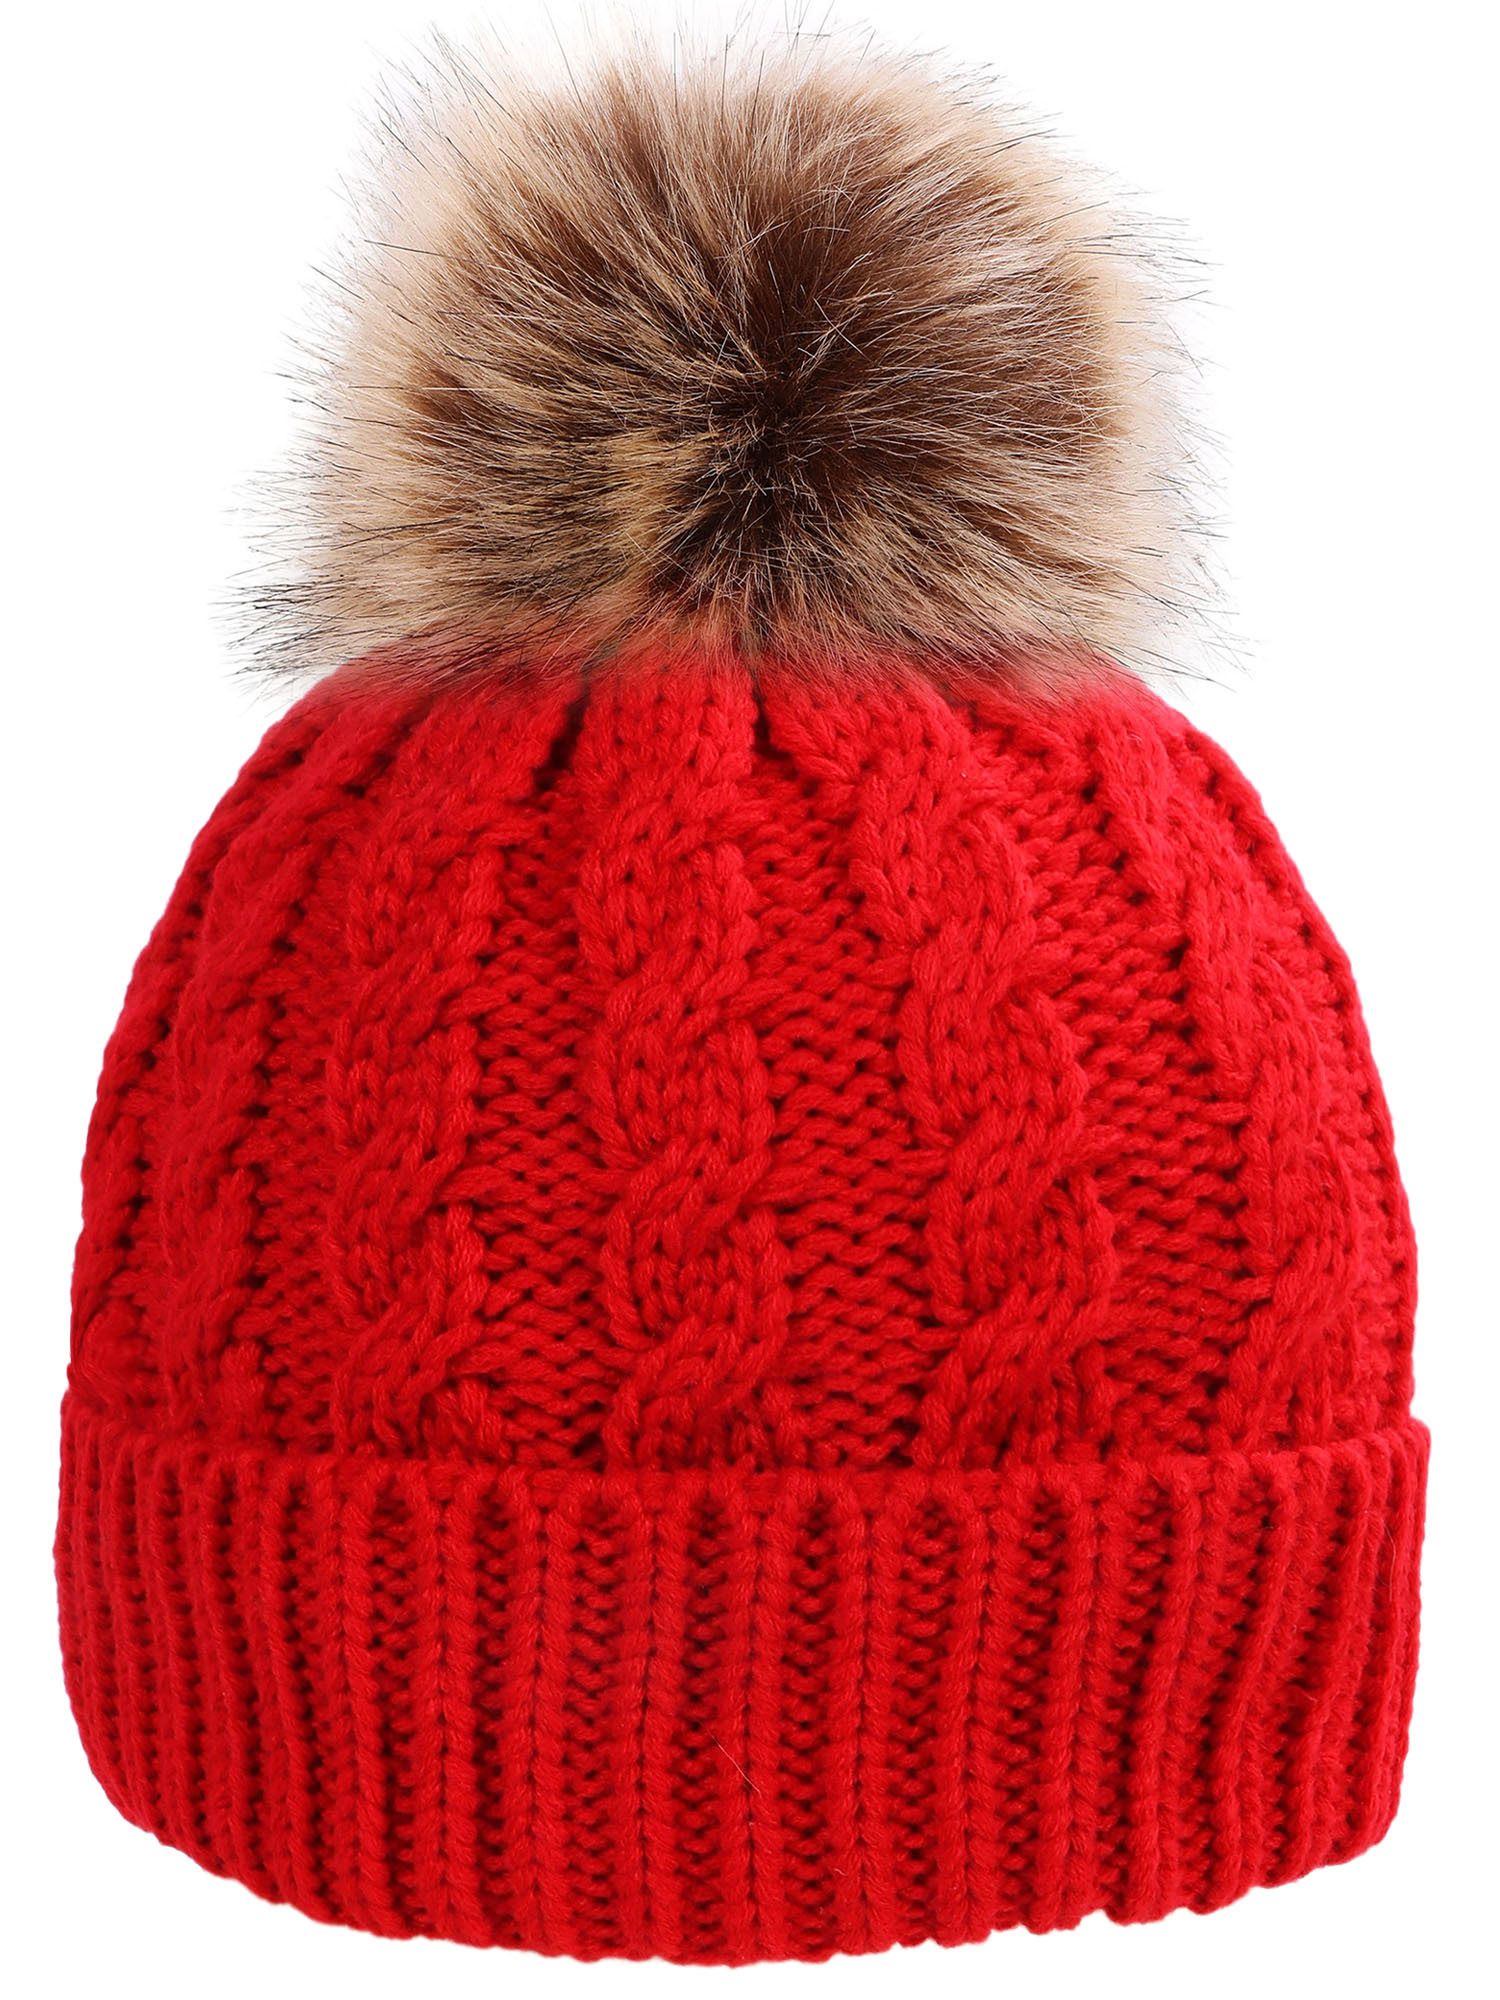 Women's Winter Soft Knit Beanie Hat with Faux Fur Pom Pom,Red | Walmart (US)